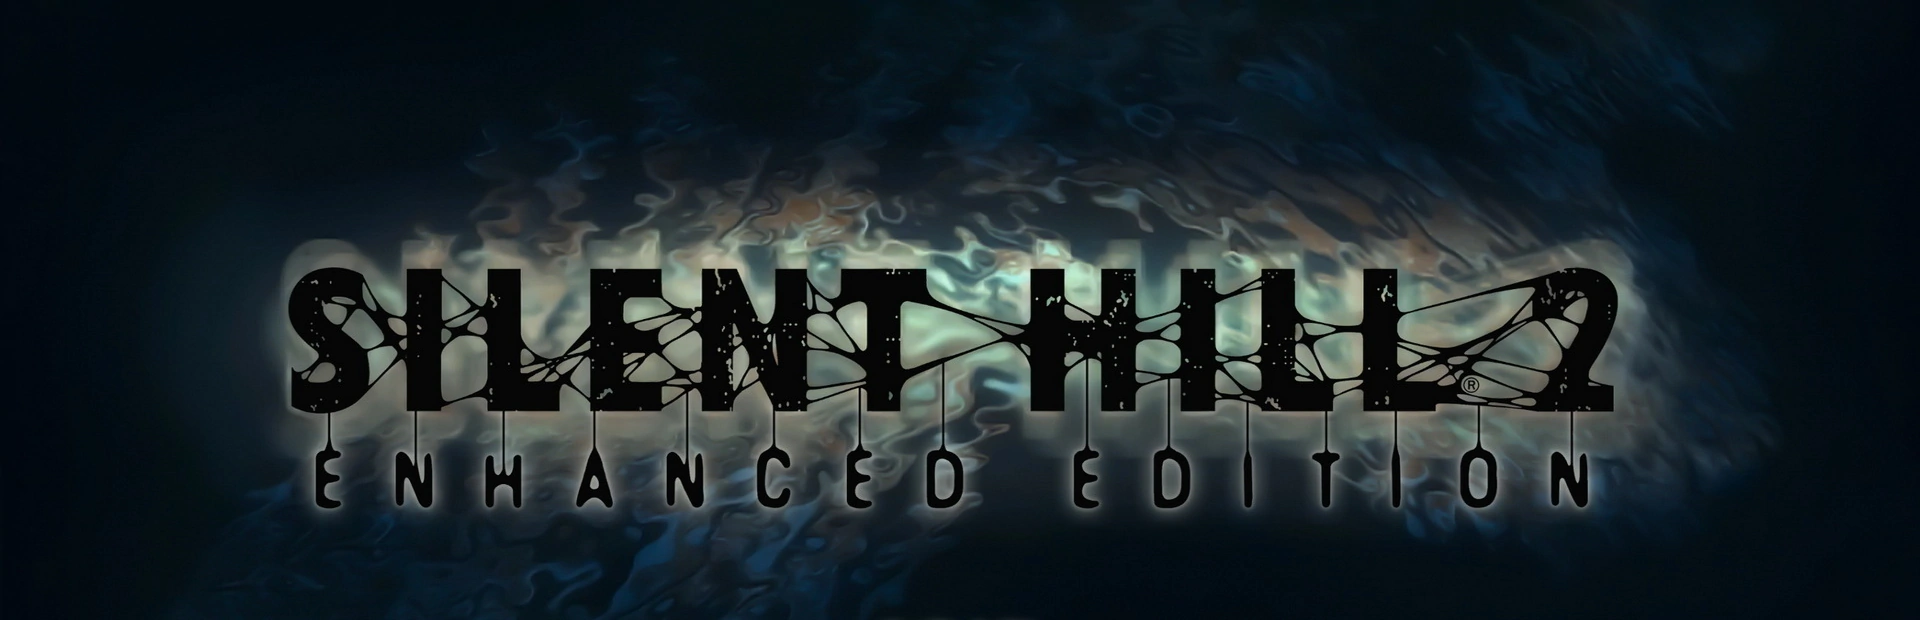 Silent Hill 2.banner1